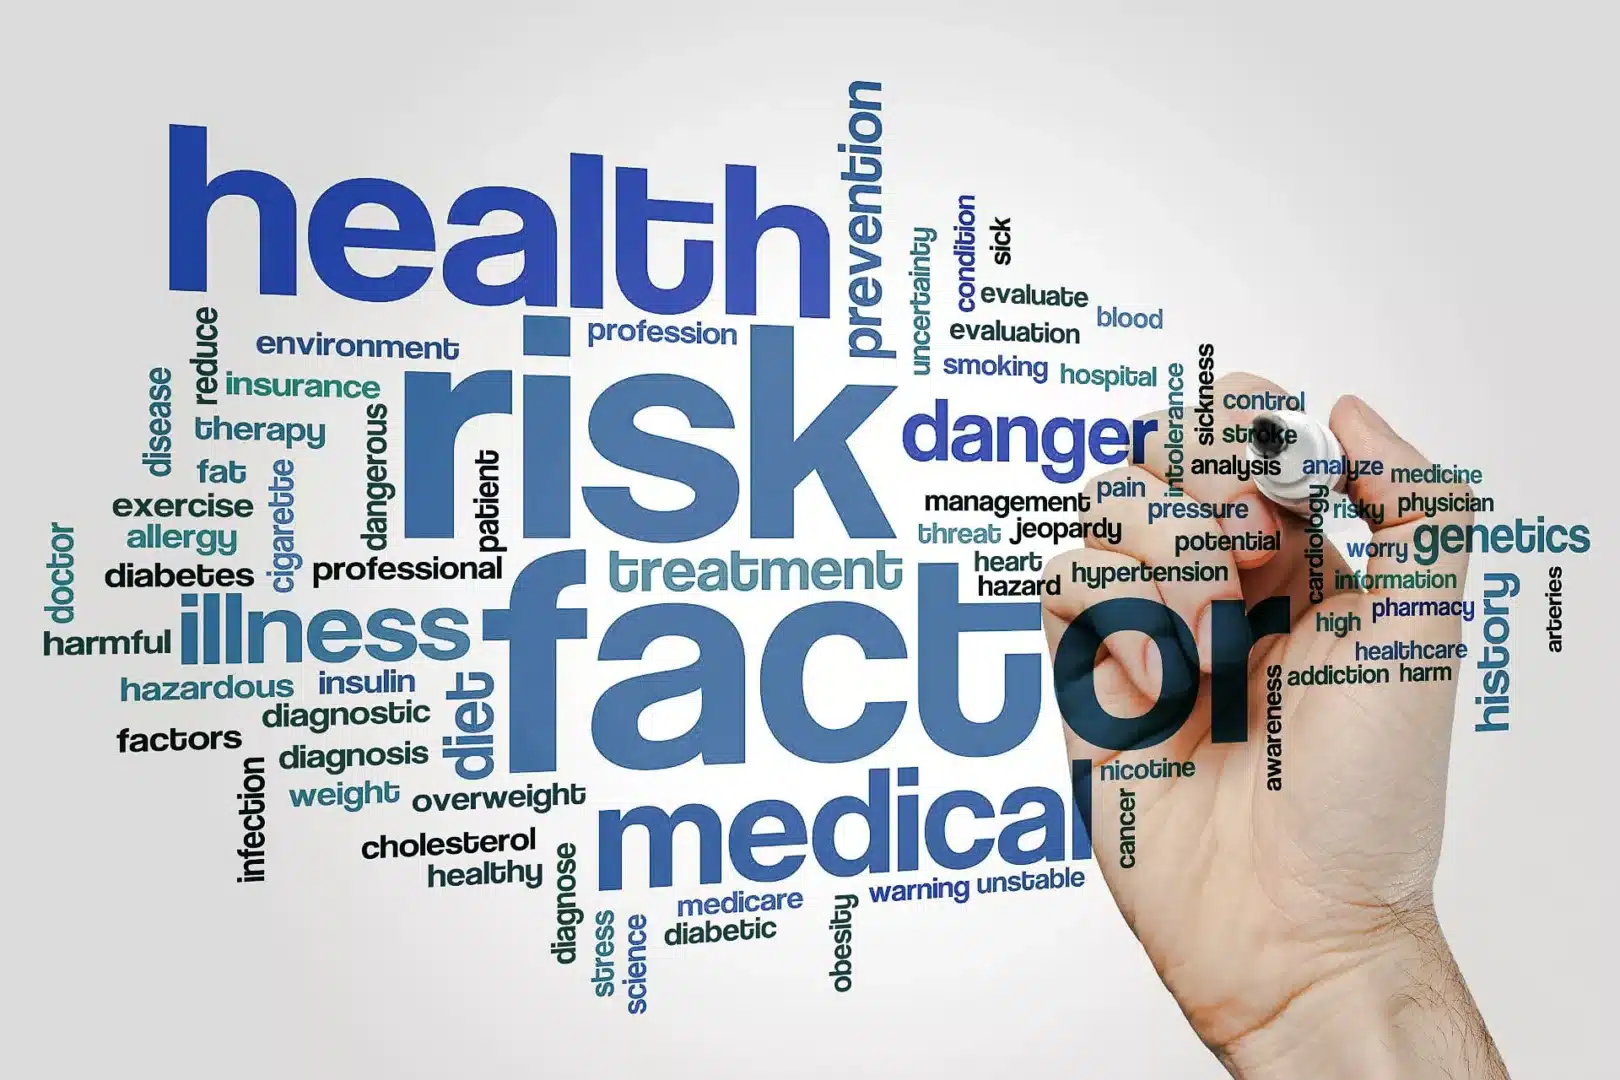 Abbildung mit vielen Begriffen zu Gesundheit, Risiko und Faktoren durcheinander gemischt.